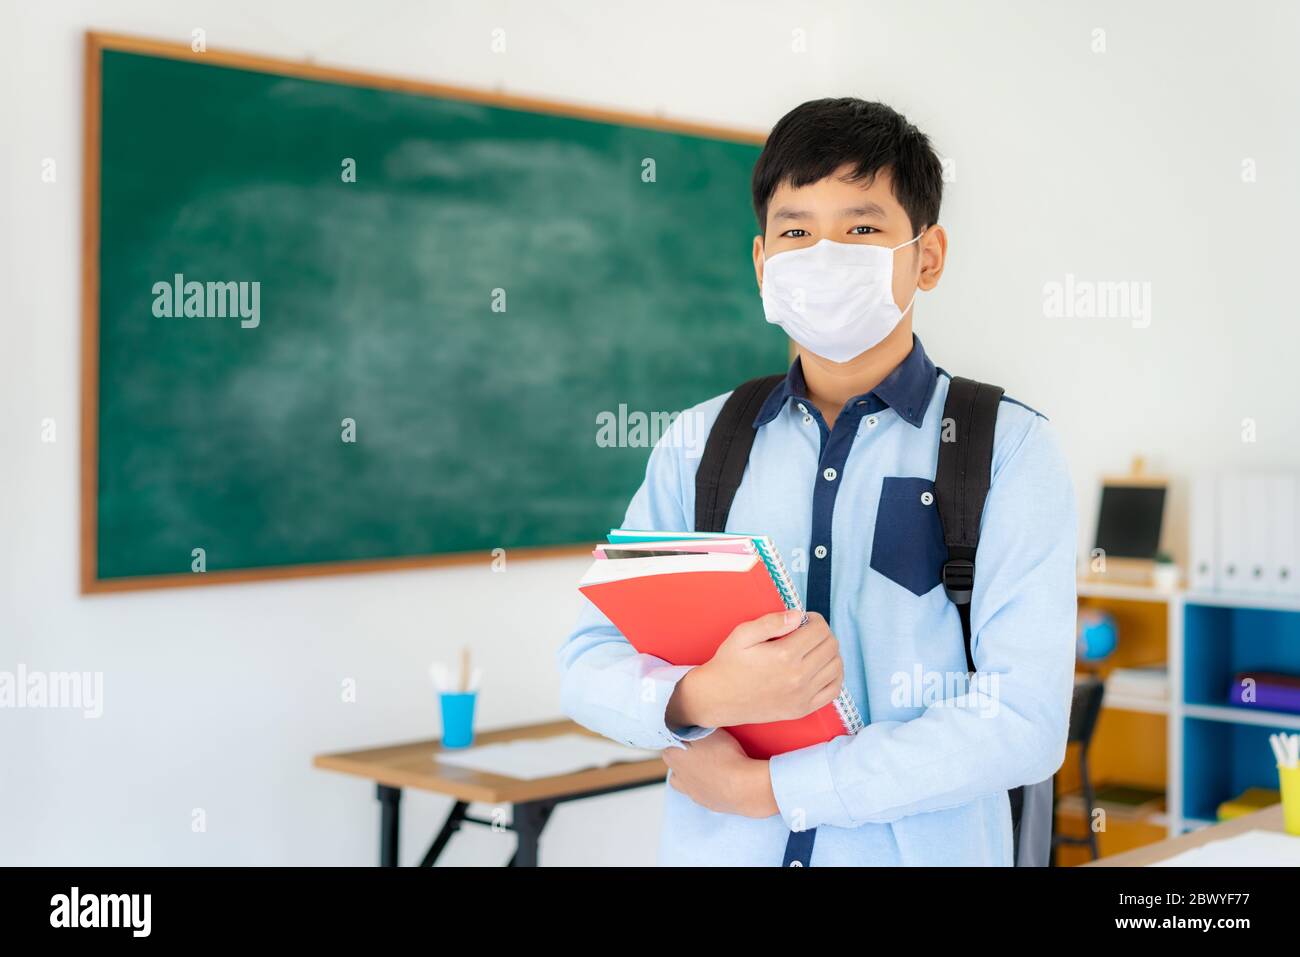 Asiatische Grundschüler Jungen mit Rucksack und Bücher tragen Masken, um den Ausbruch von Covid 19 im Klassenzimmer zu verhindern, während wieder in der Schule öffnen ihre sc Stockfoto